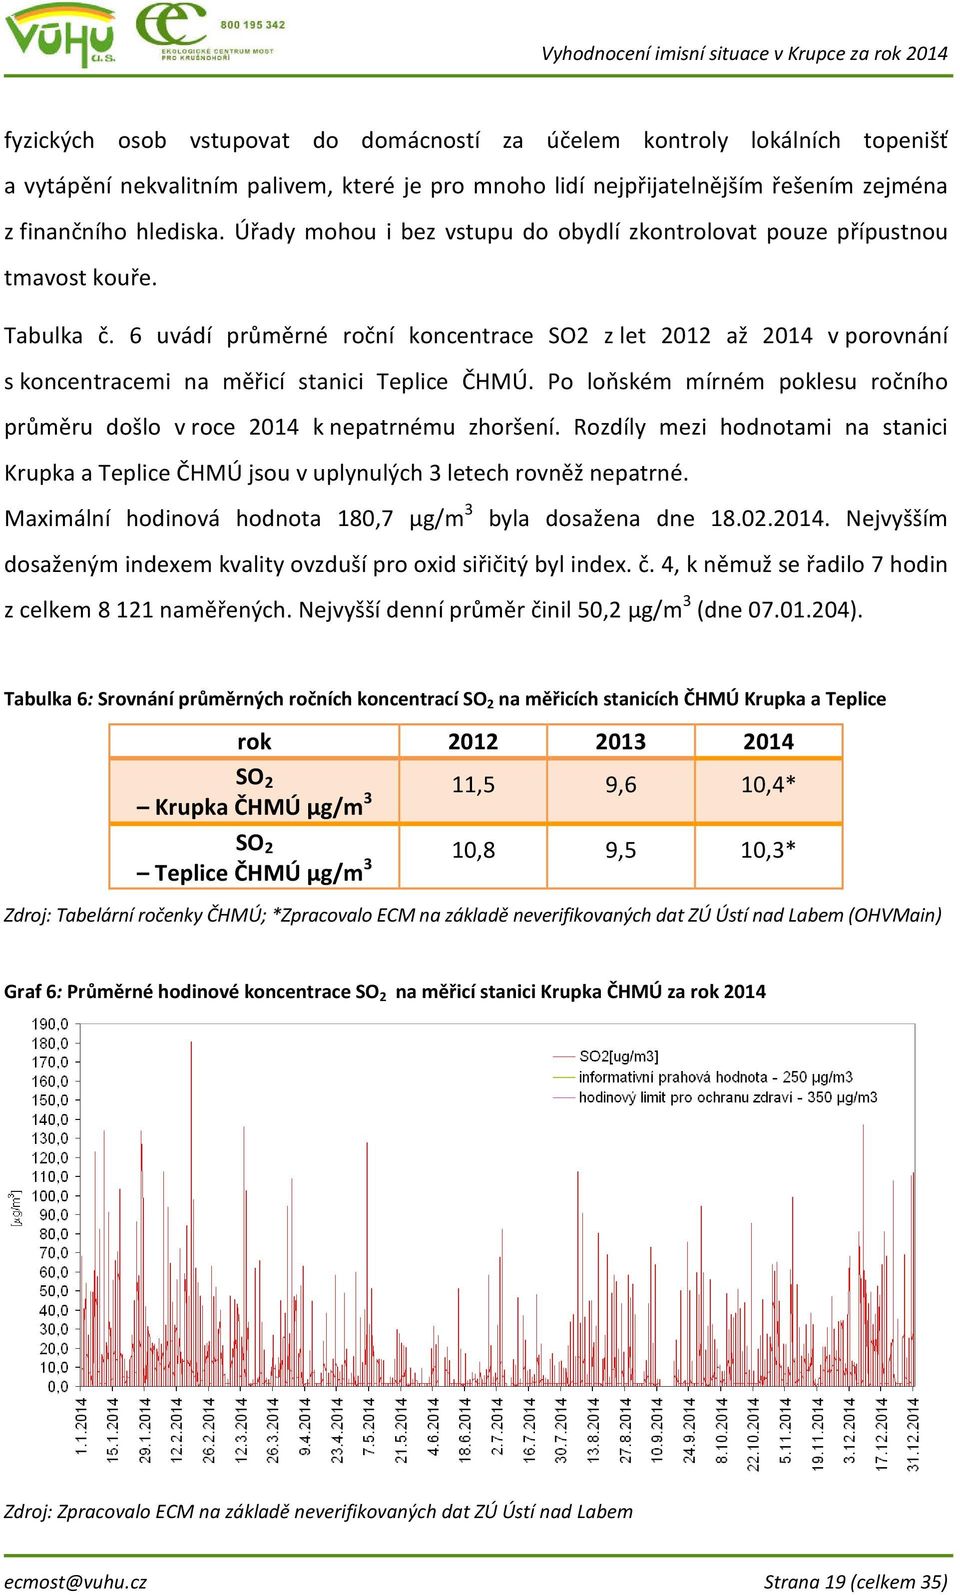 6 uvádí průměrné roční koncentrace SO2 z let 2012 až 2014 v porovnání s koncentracemi na měřicí stanici Teplice ČHMÚ. Po loňském mírném poklesu ročního průměru došlo v roce 2014 k nepatrnému zhoršení.